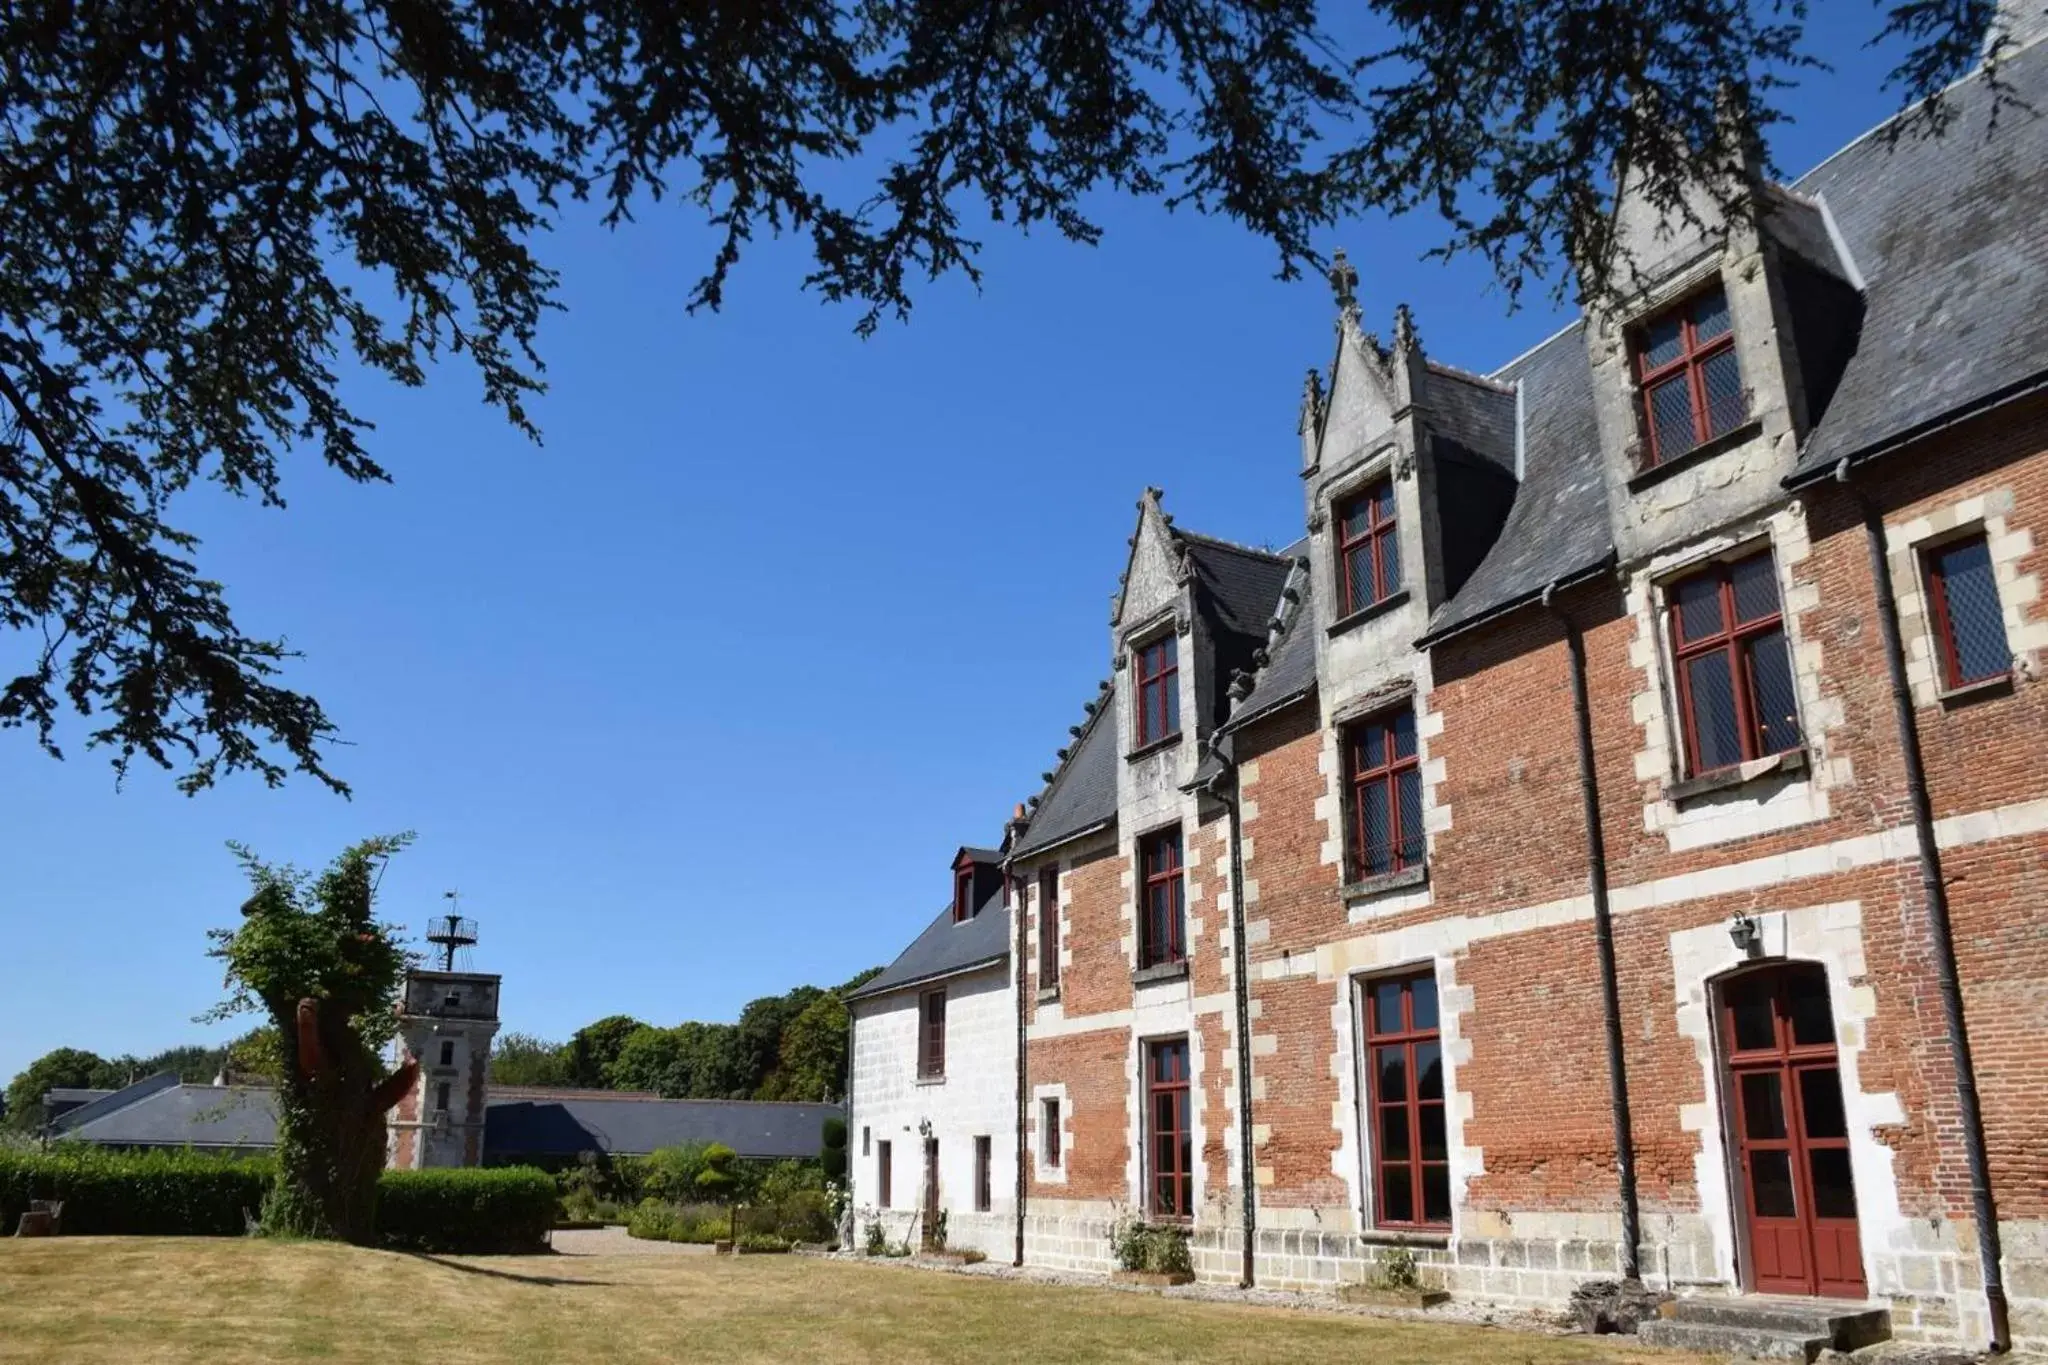 Property Building in Chateau de Jallanges - Les Collectionneurs